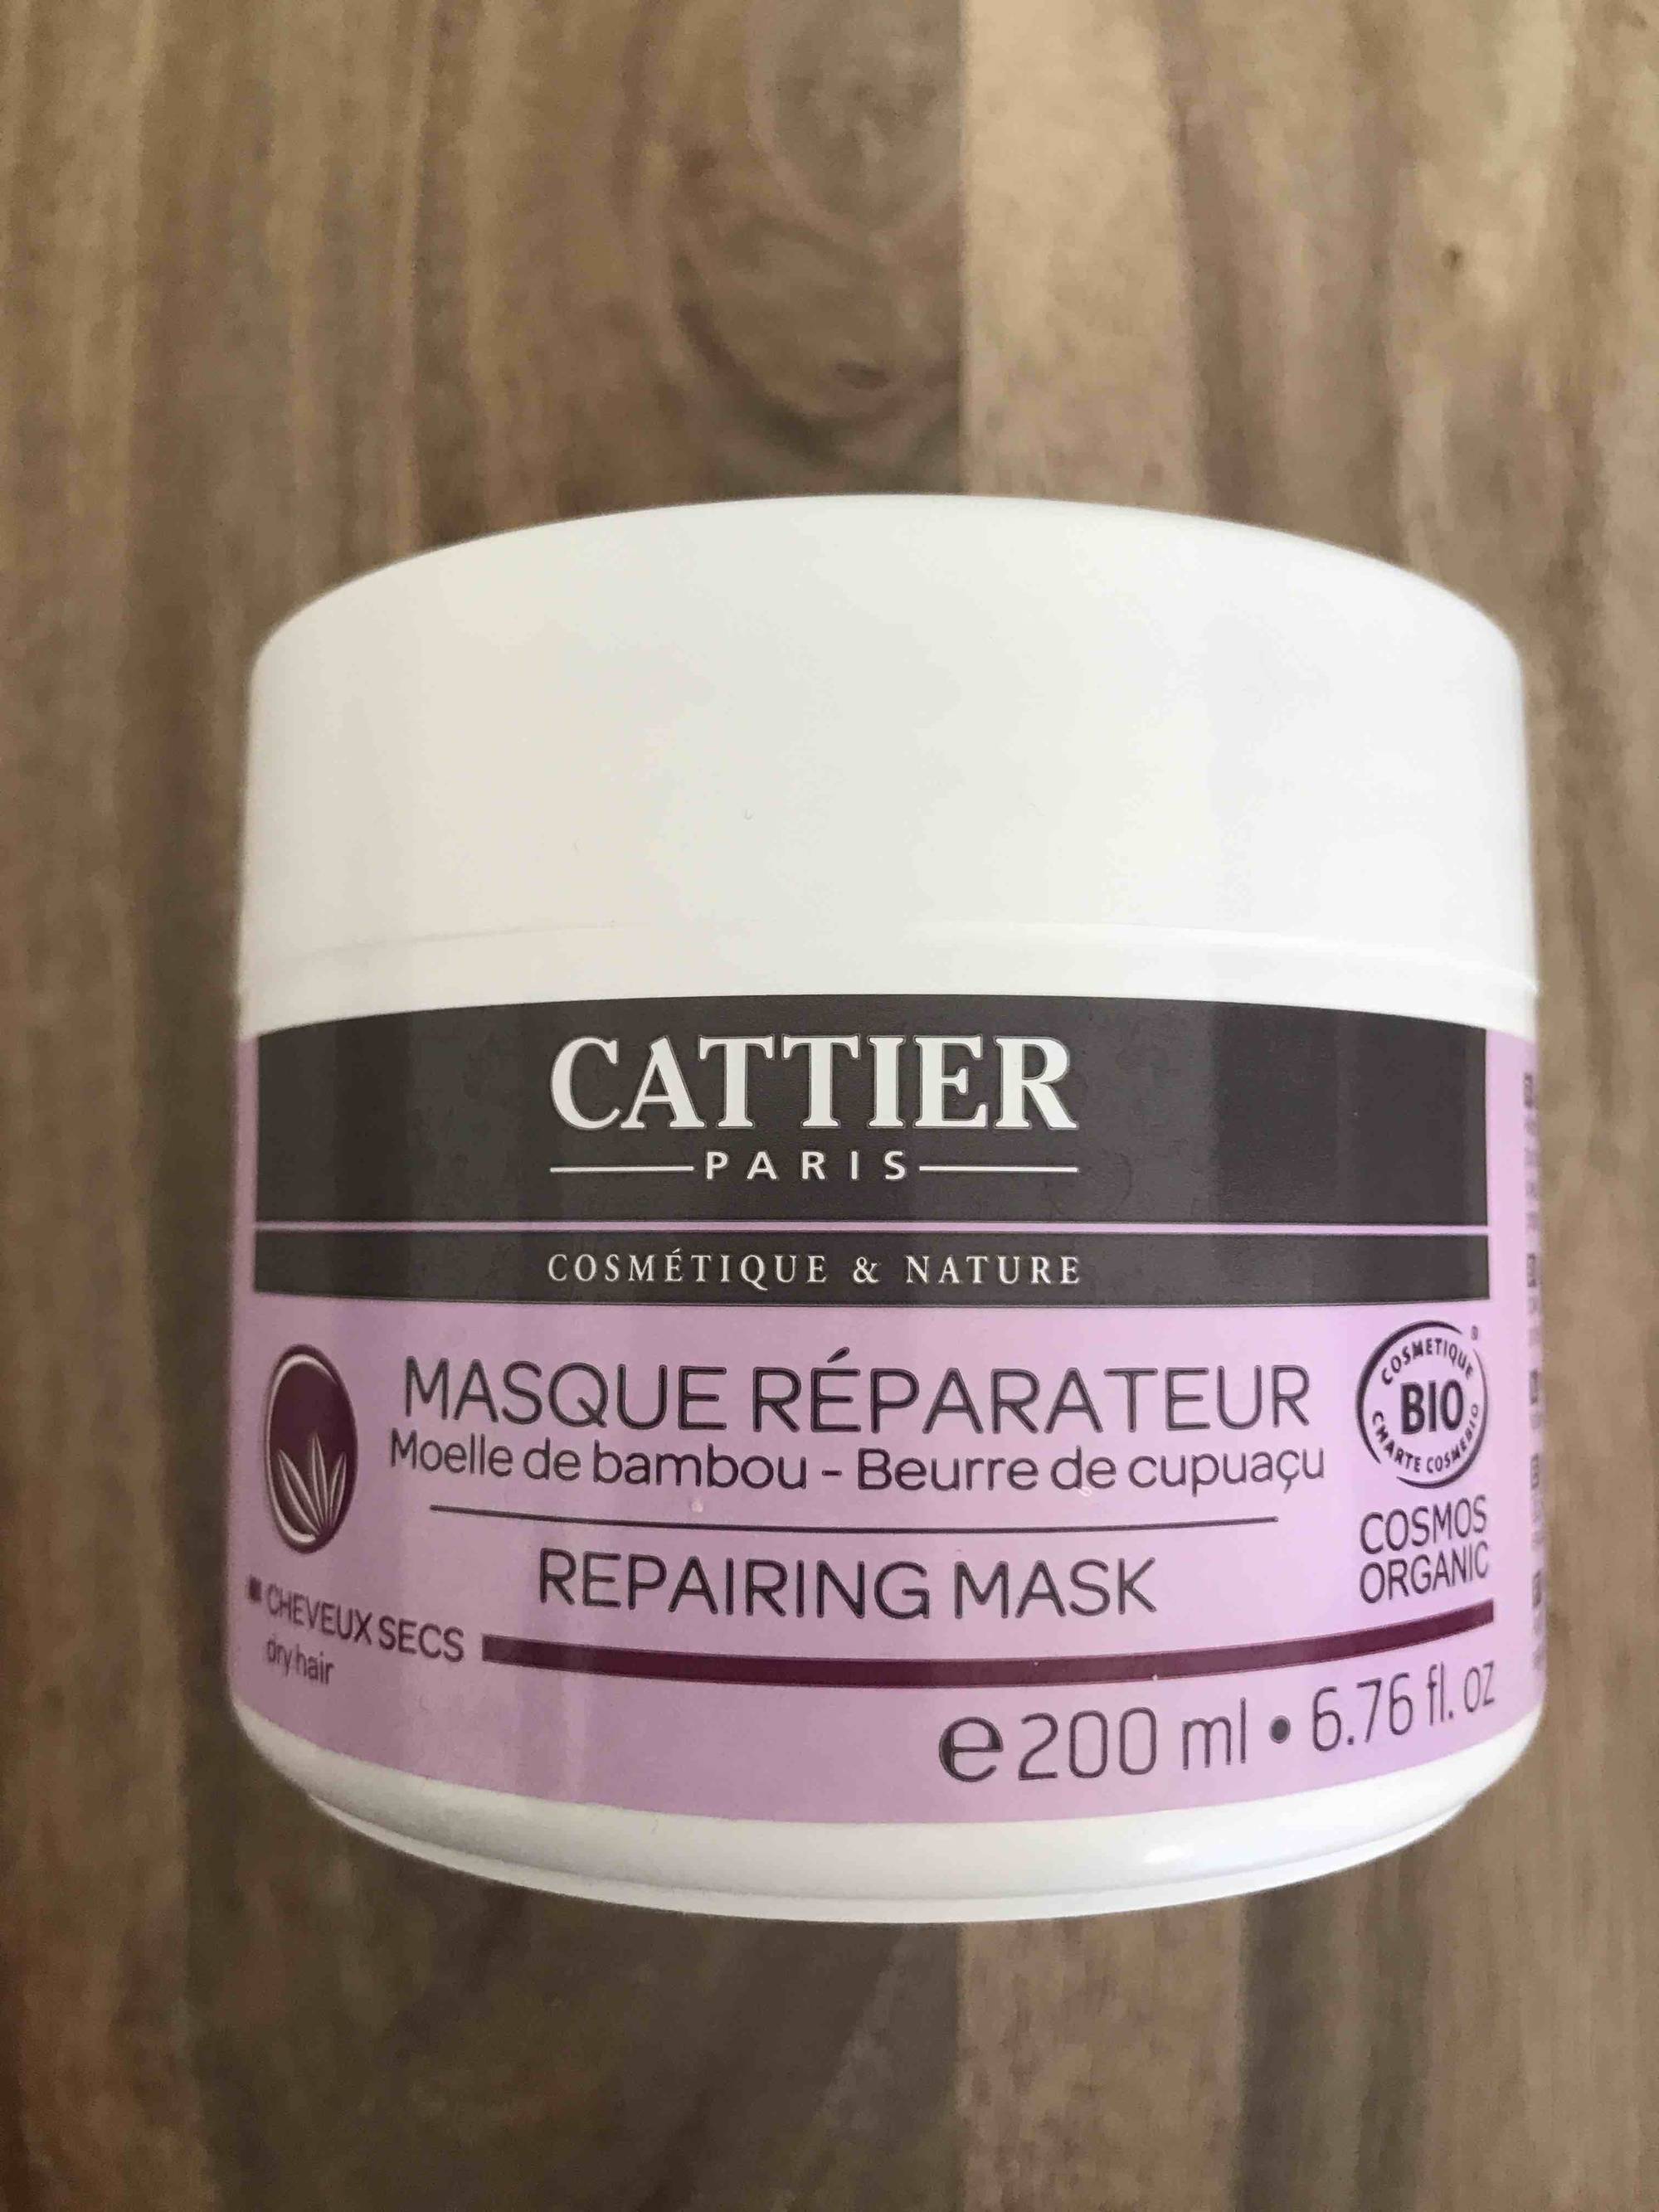 CATTIER PARIS - Masque réparateur au moelle de bambou